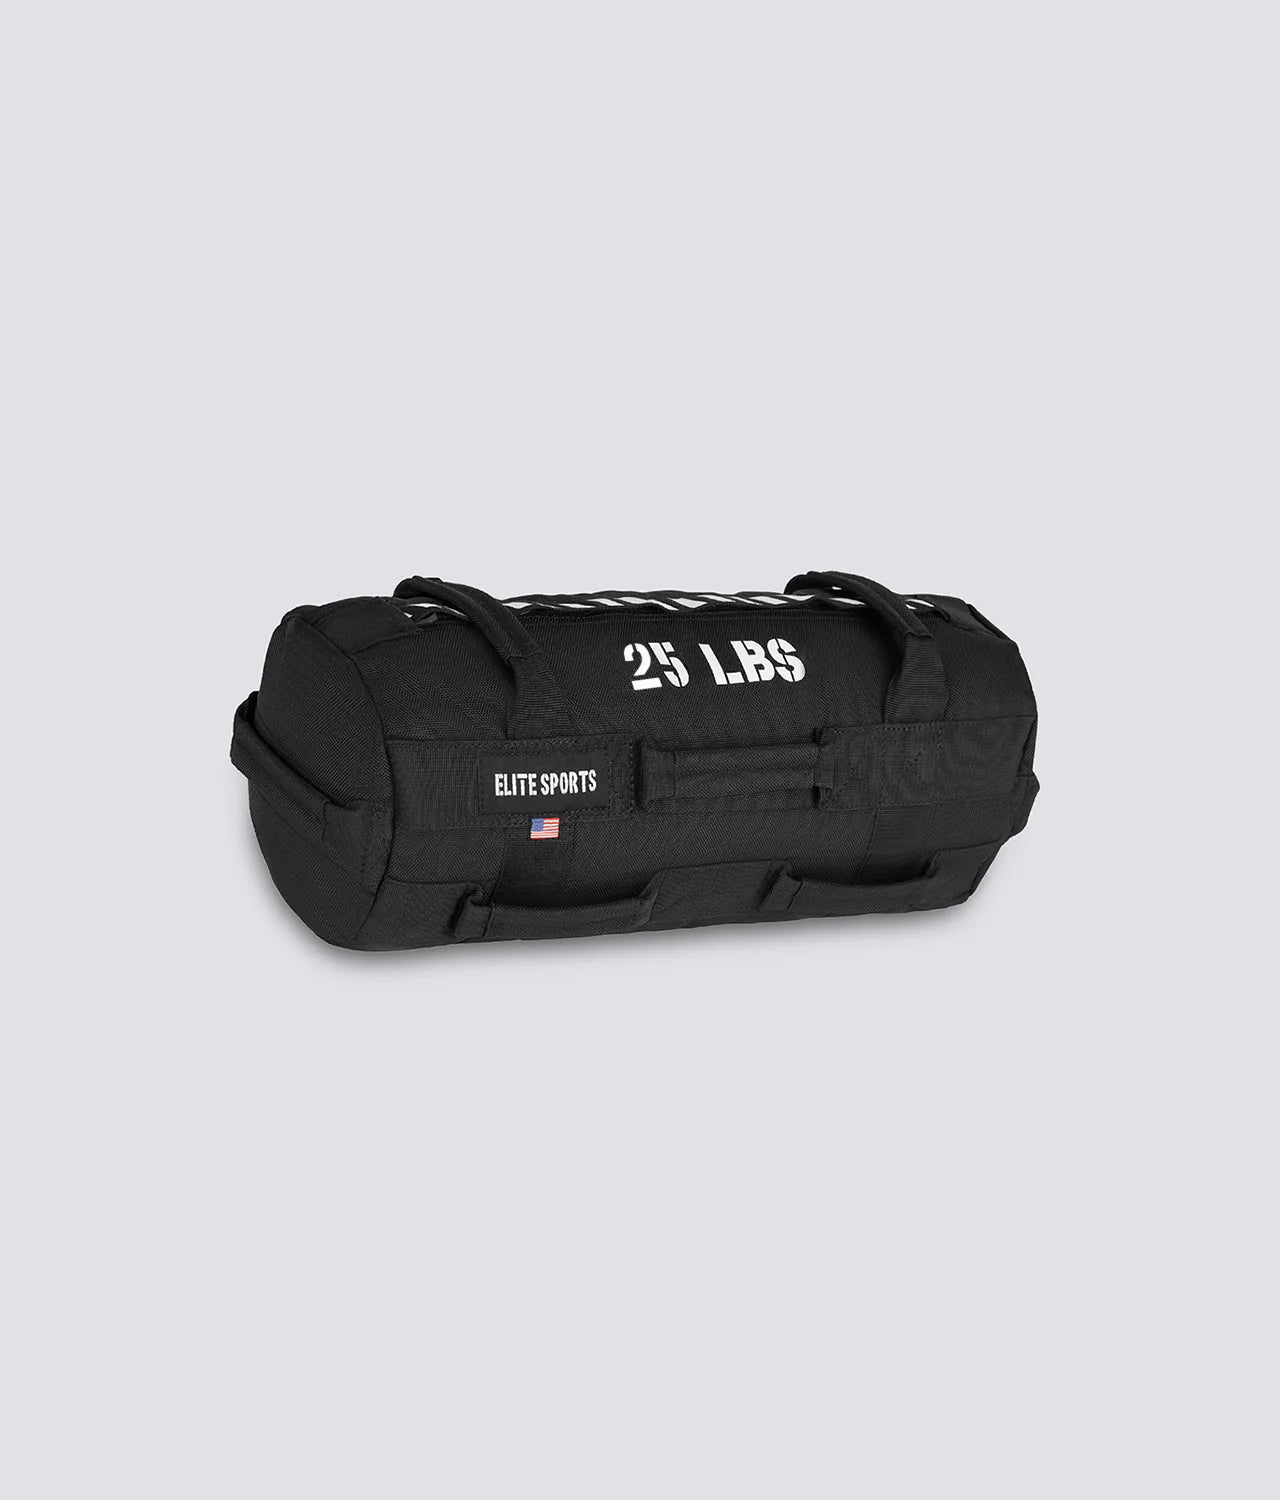 Elite Sports Core Duffel Workout Sandbag 25 lbs